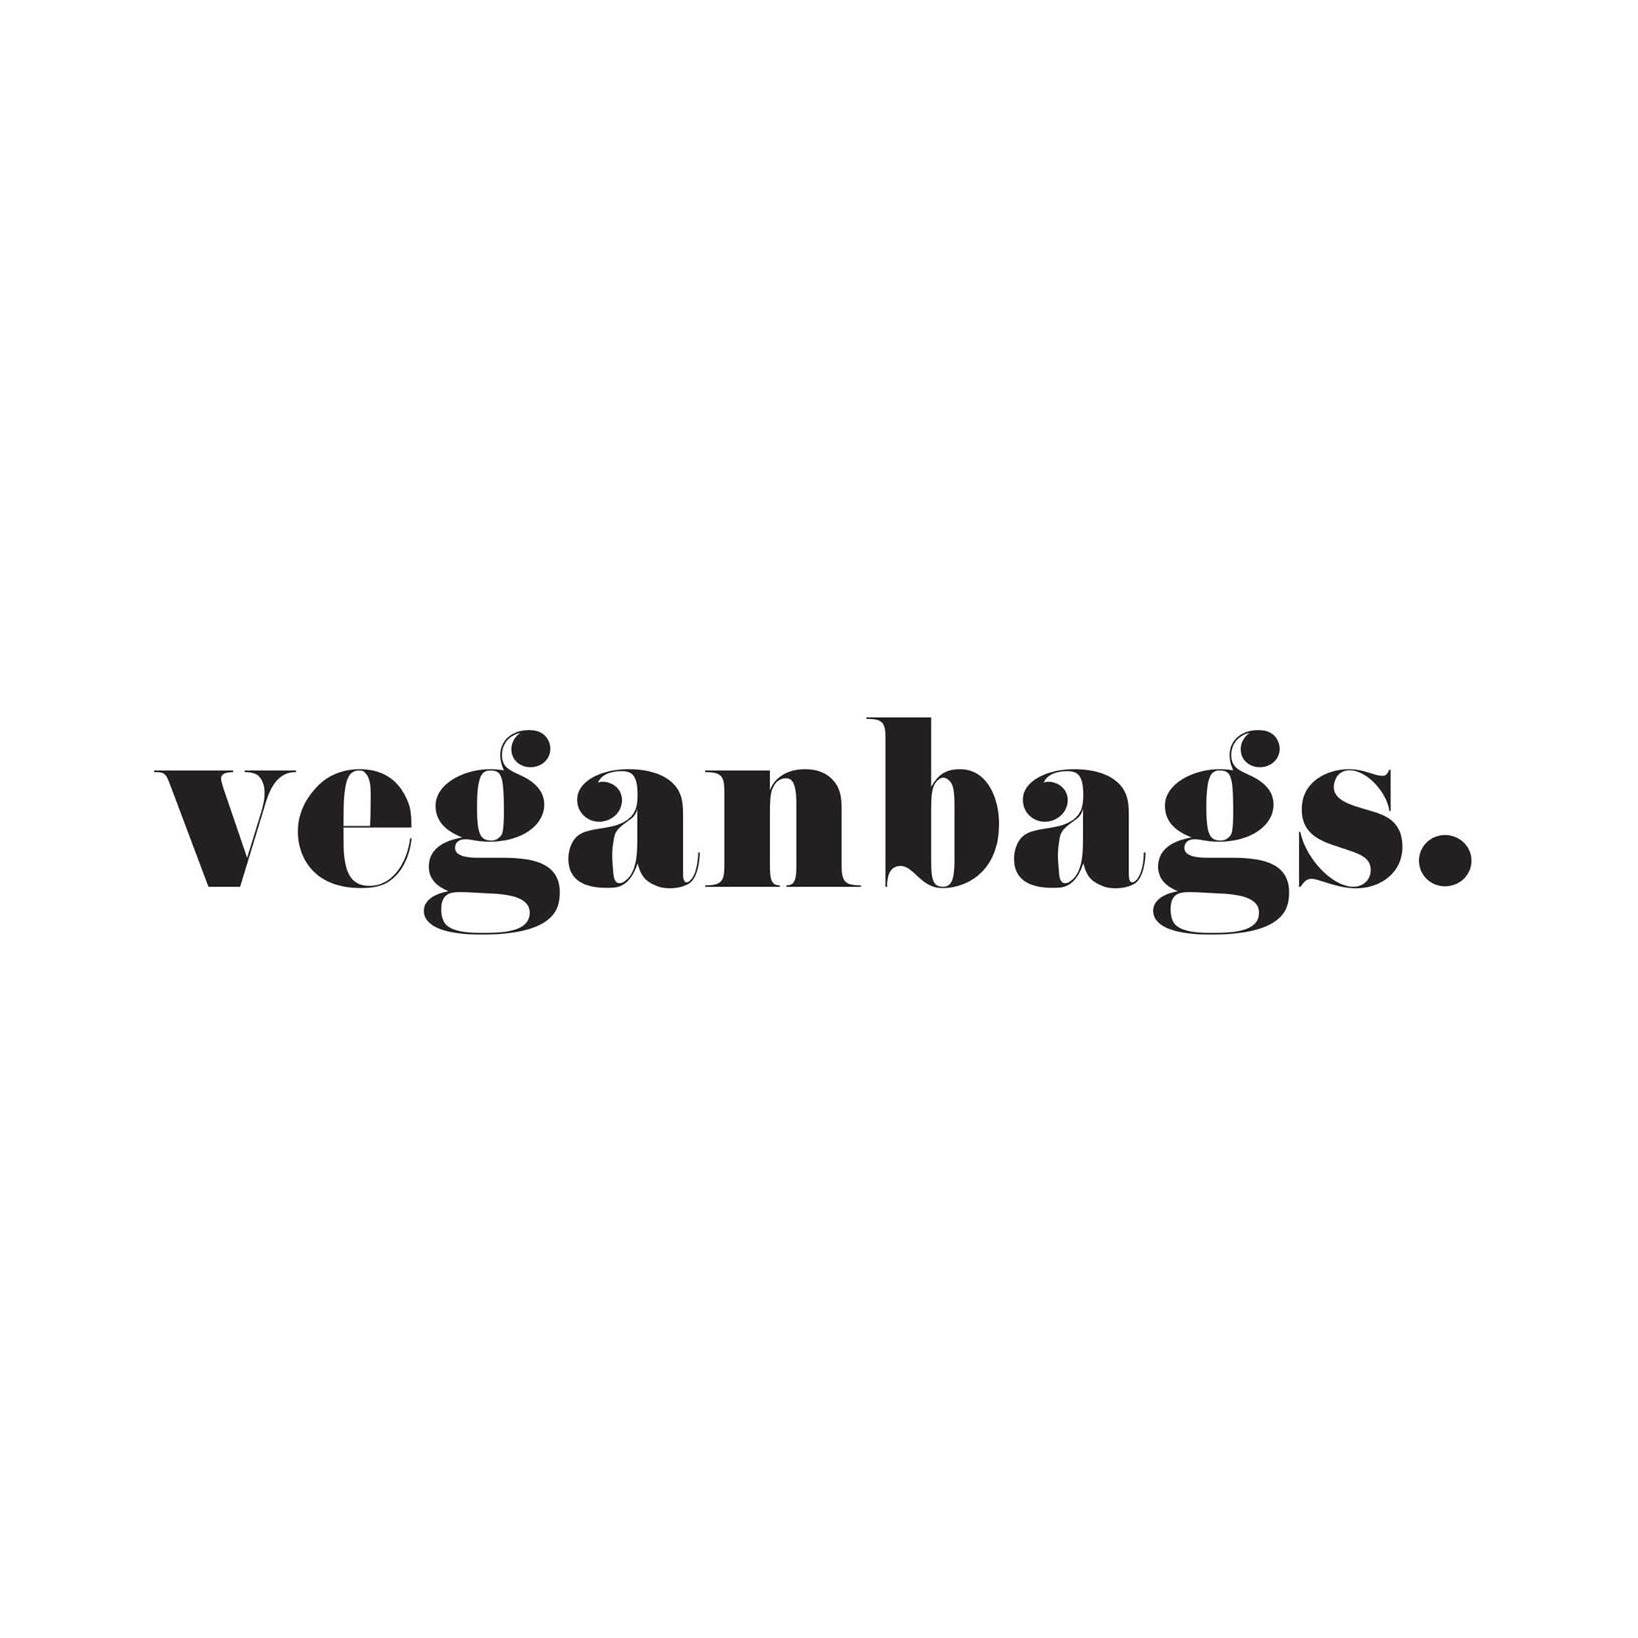 Veganbags reviews, beoordelingen en ervaringen